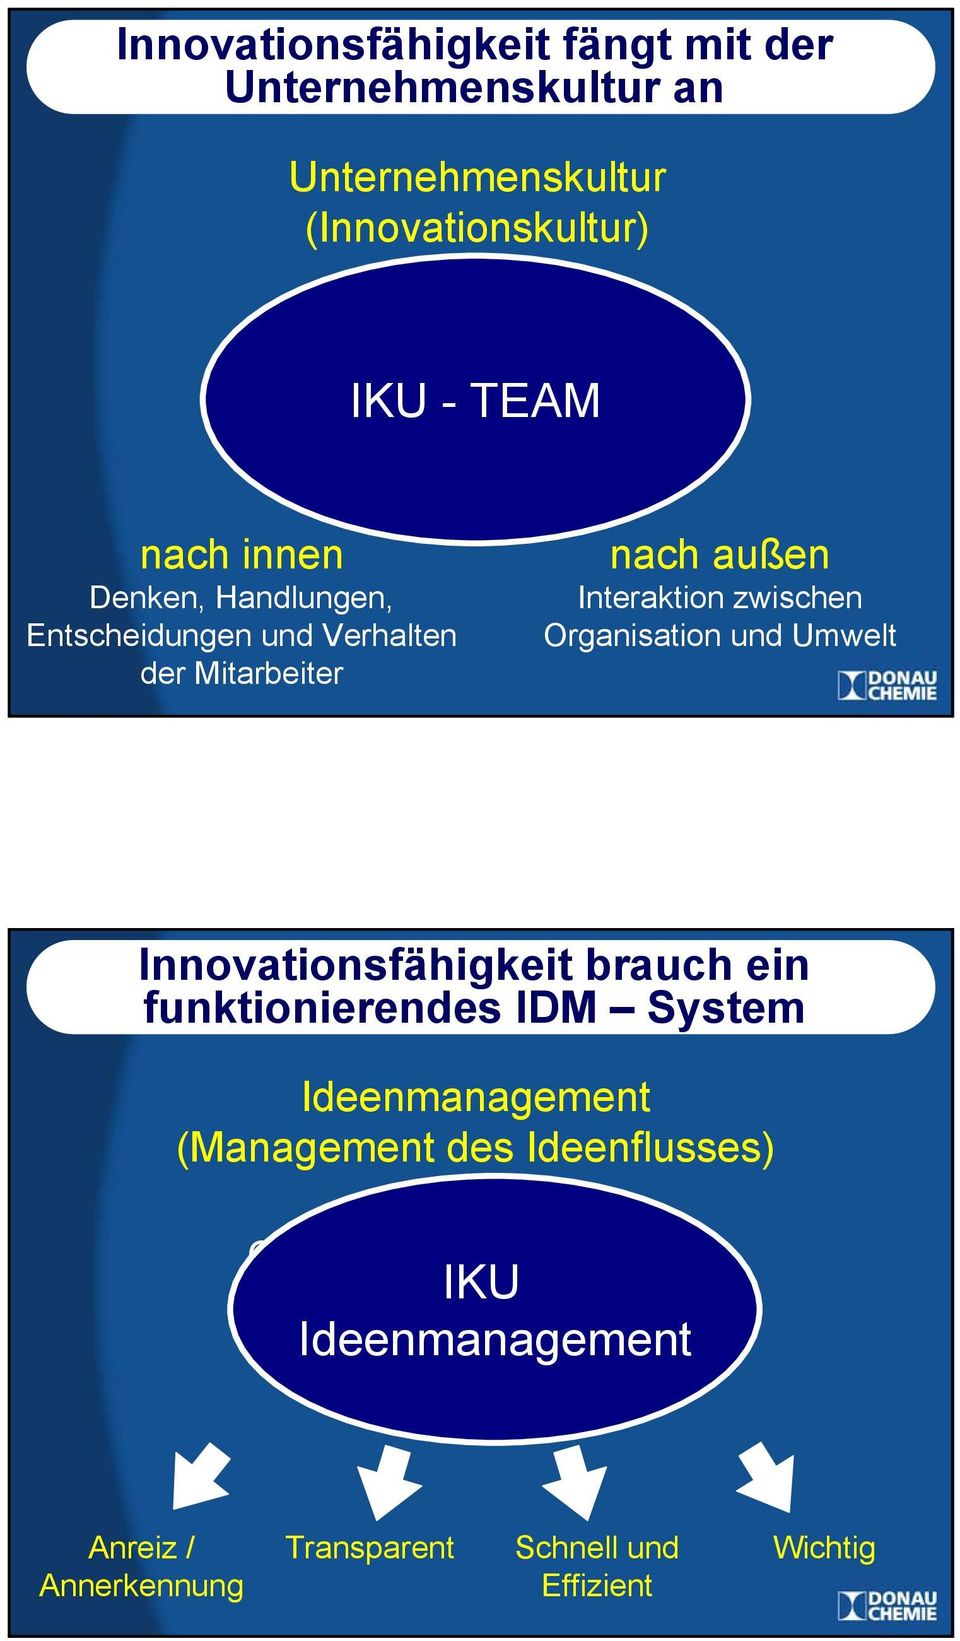 zwischen Organisation und Umwelt Innovationsfähigkeit brauch ein funktionierendes IDM System Ideenmanagement (Management des